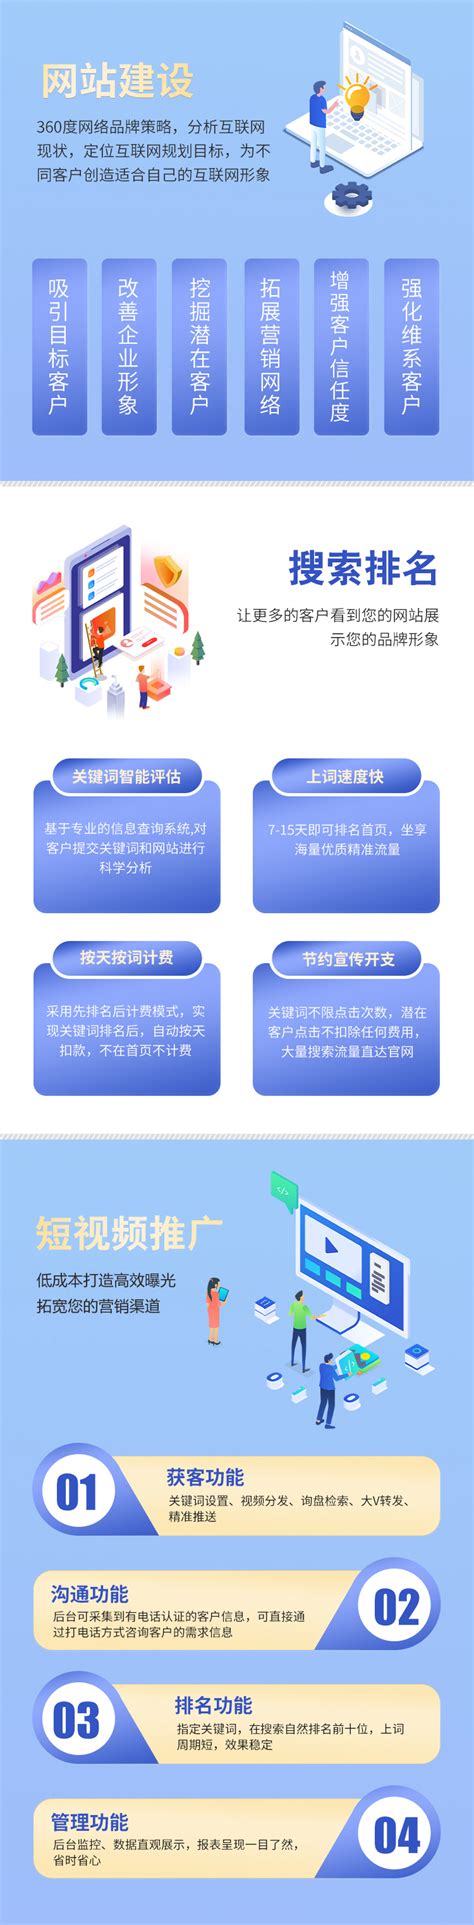 广东网站建设运营方案